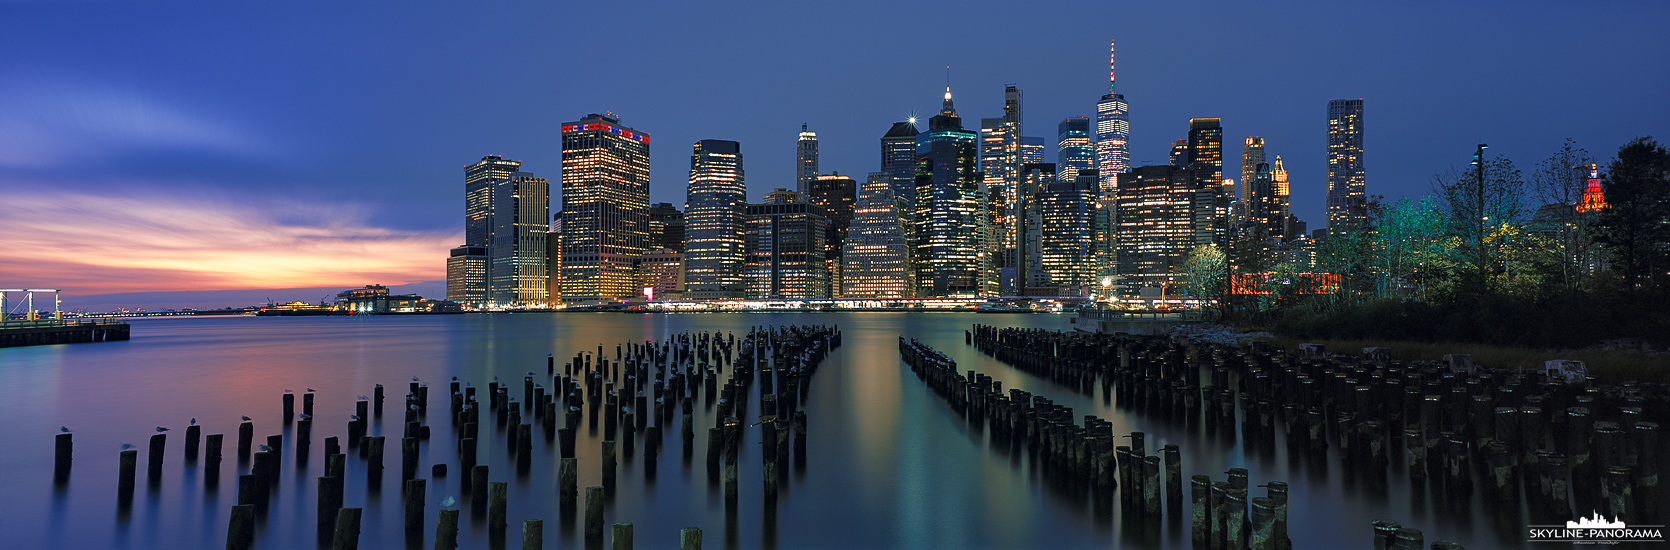 New York Panorama - Blick auf die Skyline von Downtown Manhattan gesehen vom Brooklyn Bridge Park aus, im Vordergrund sind die Überreste des Old Pier 1 zu sehen.